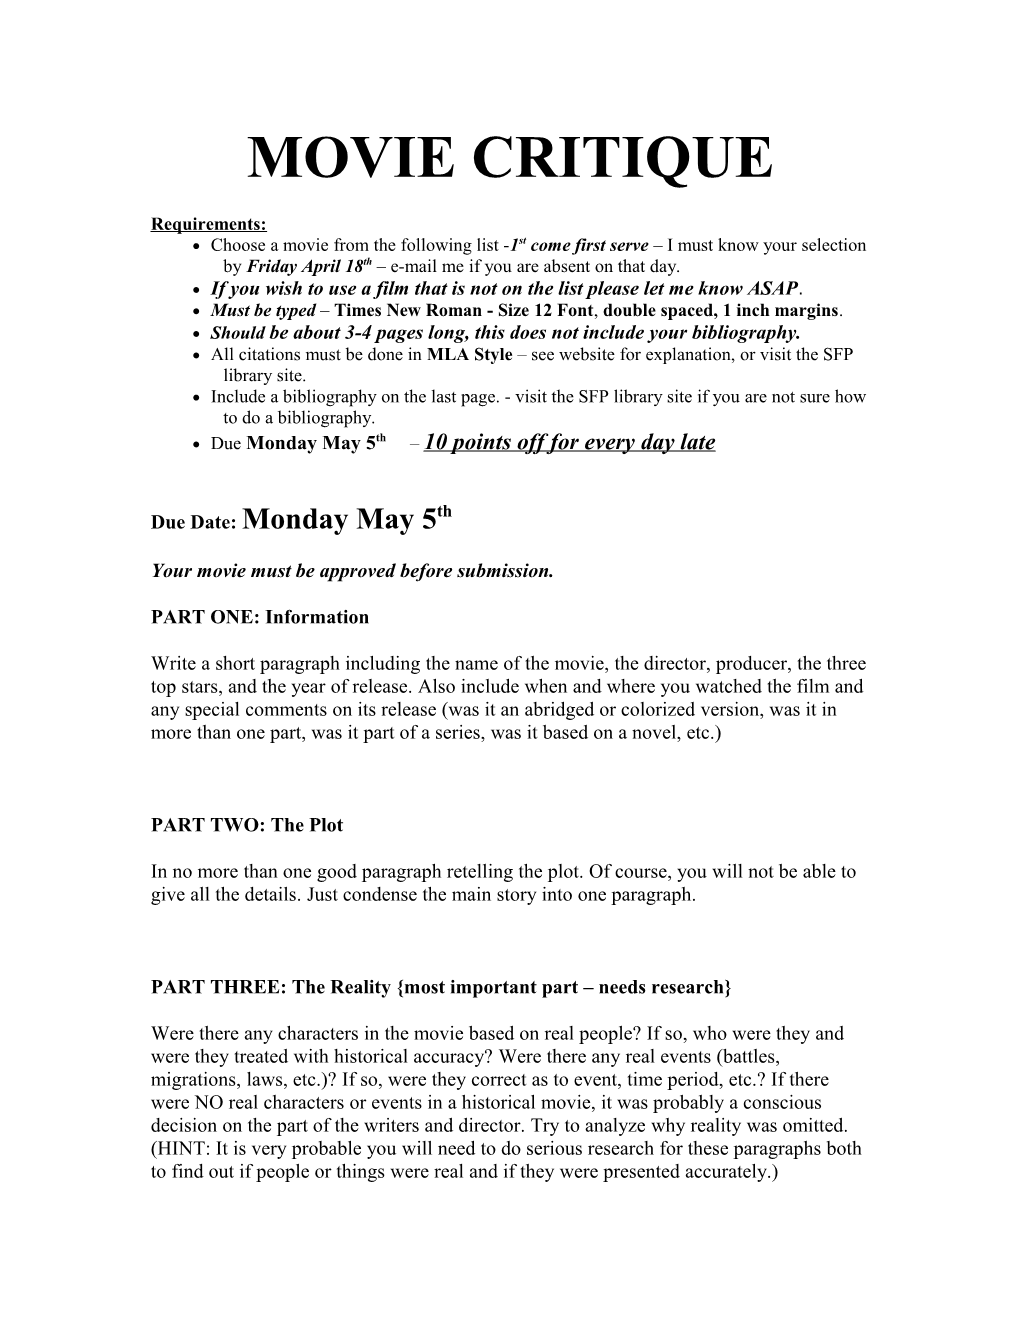 Movie Critique